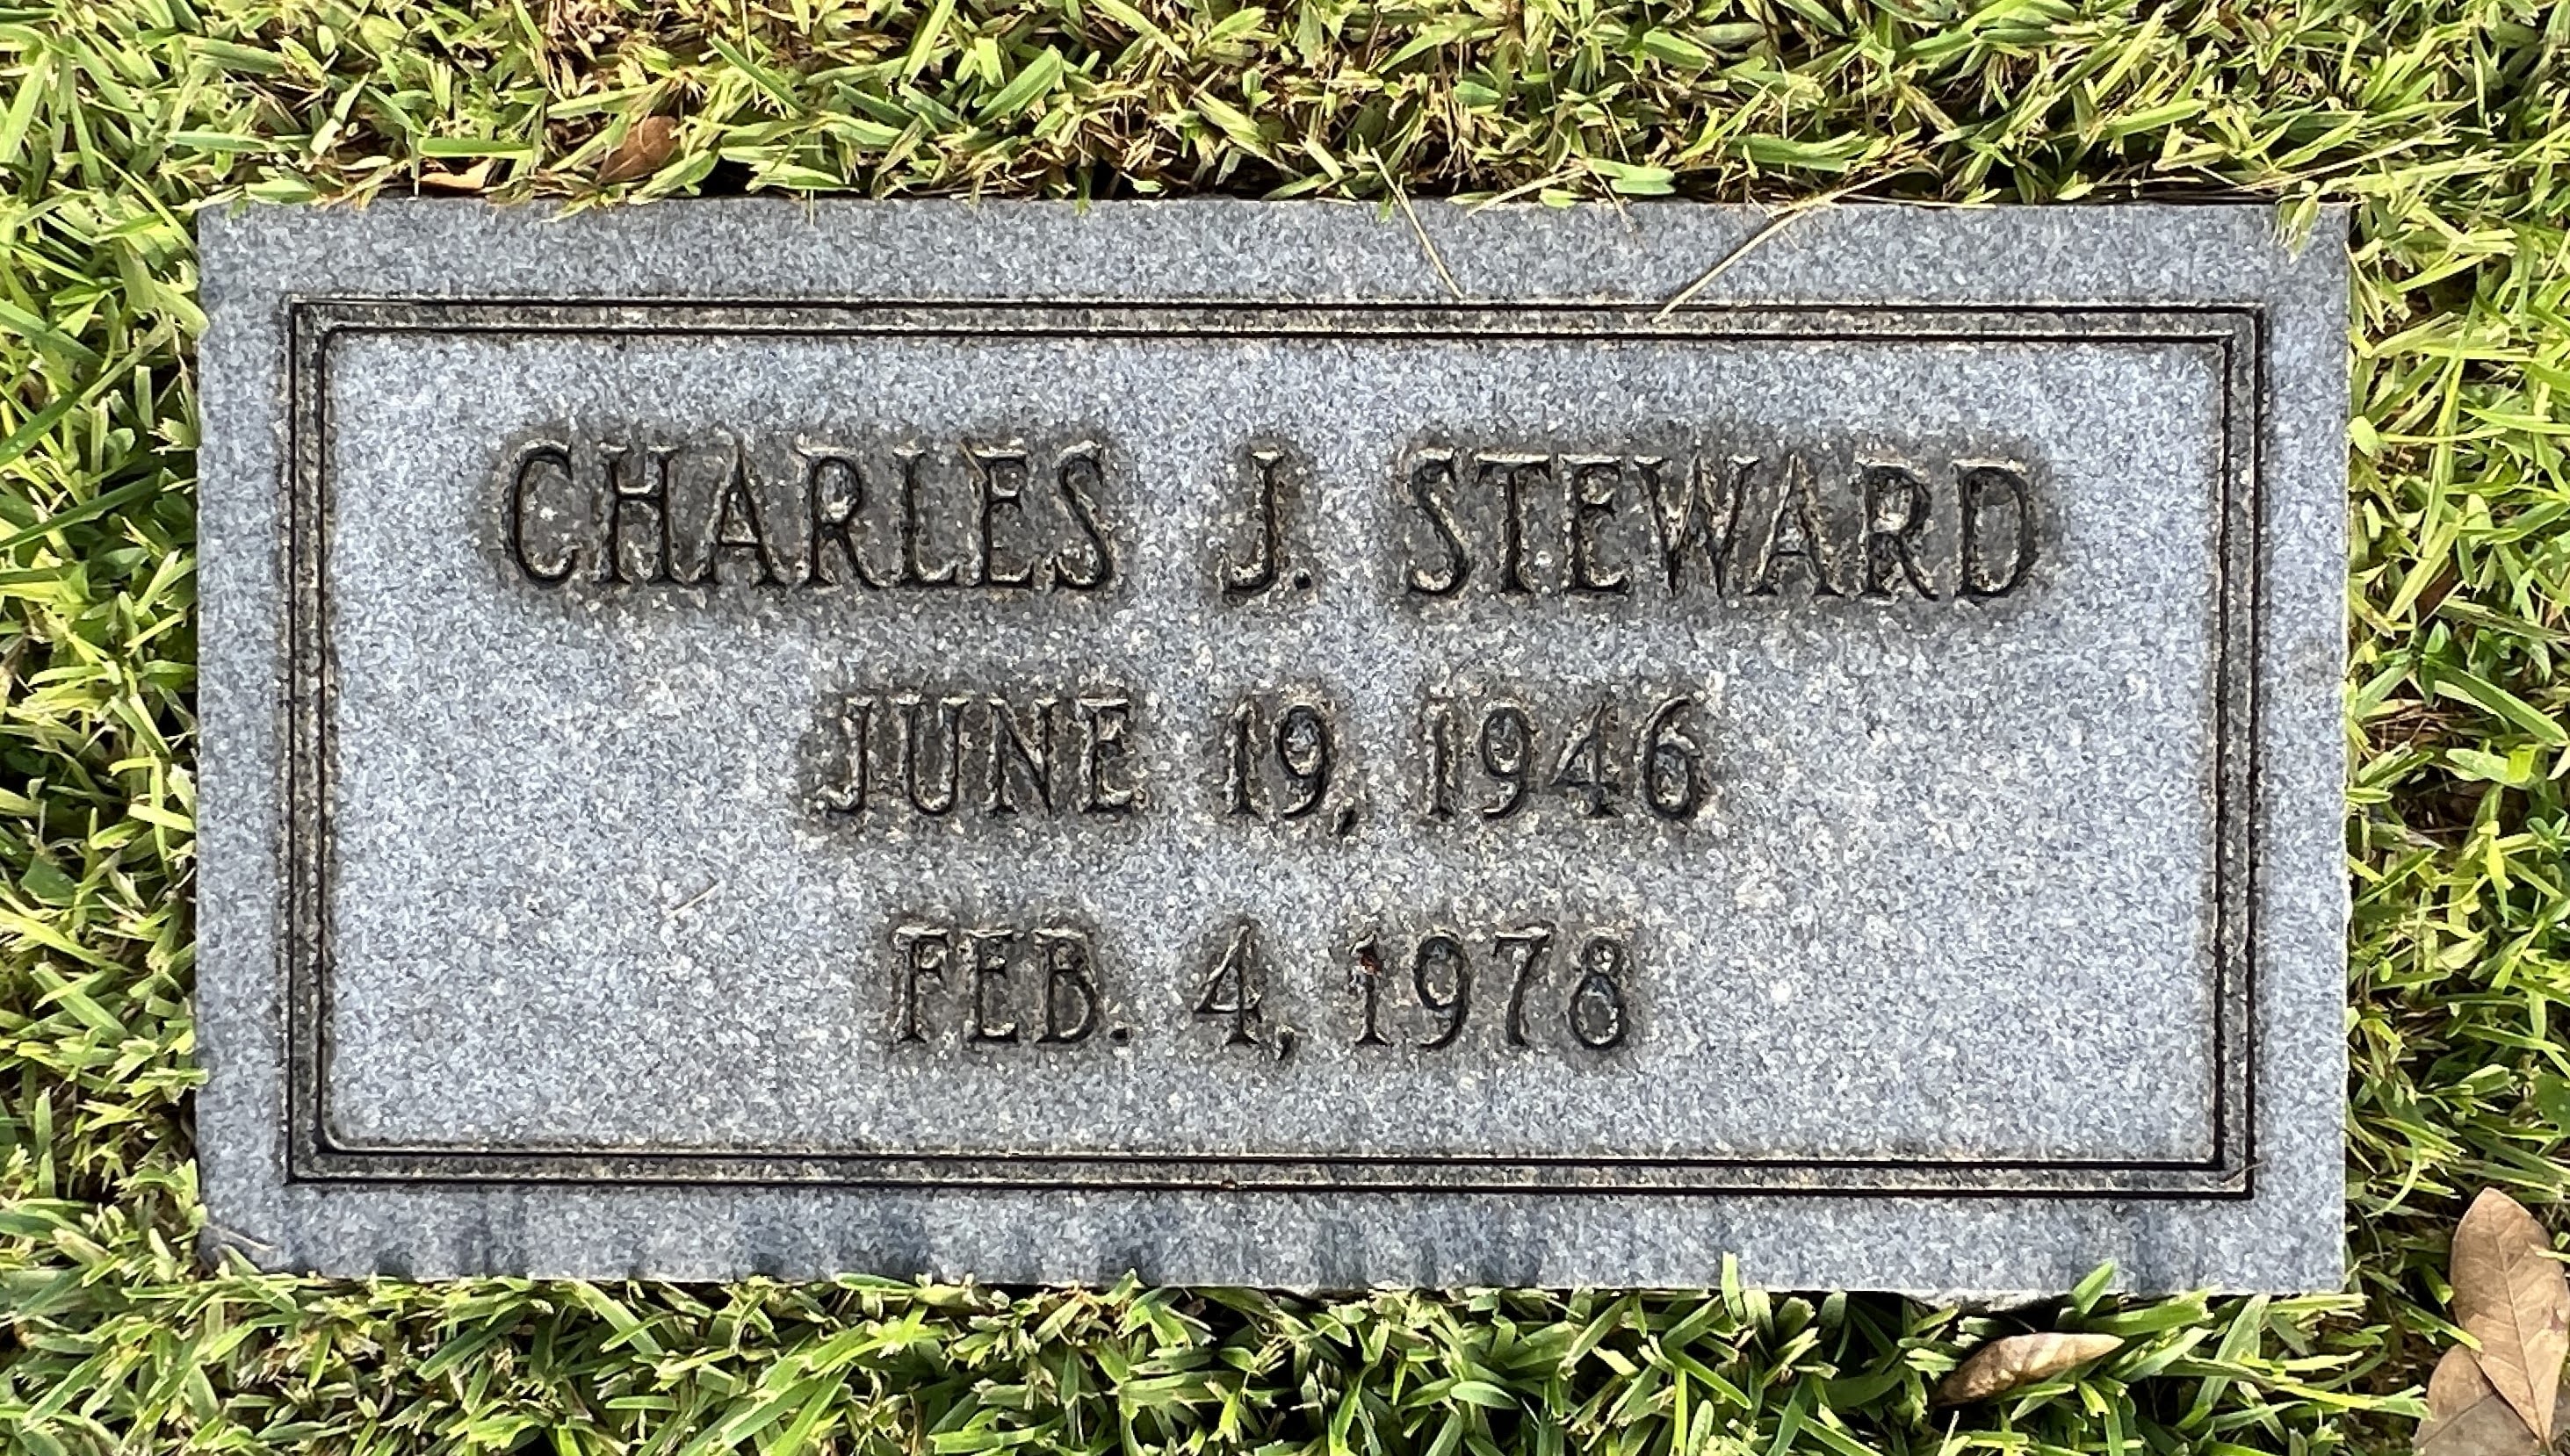 Charles J Steward